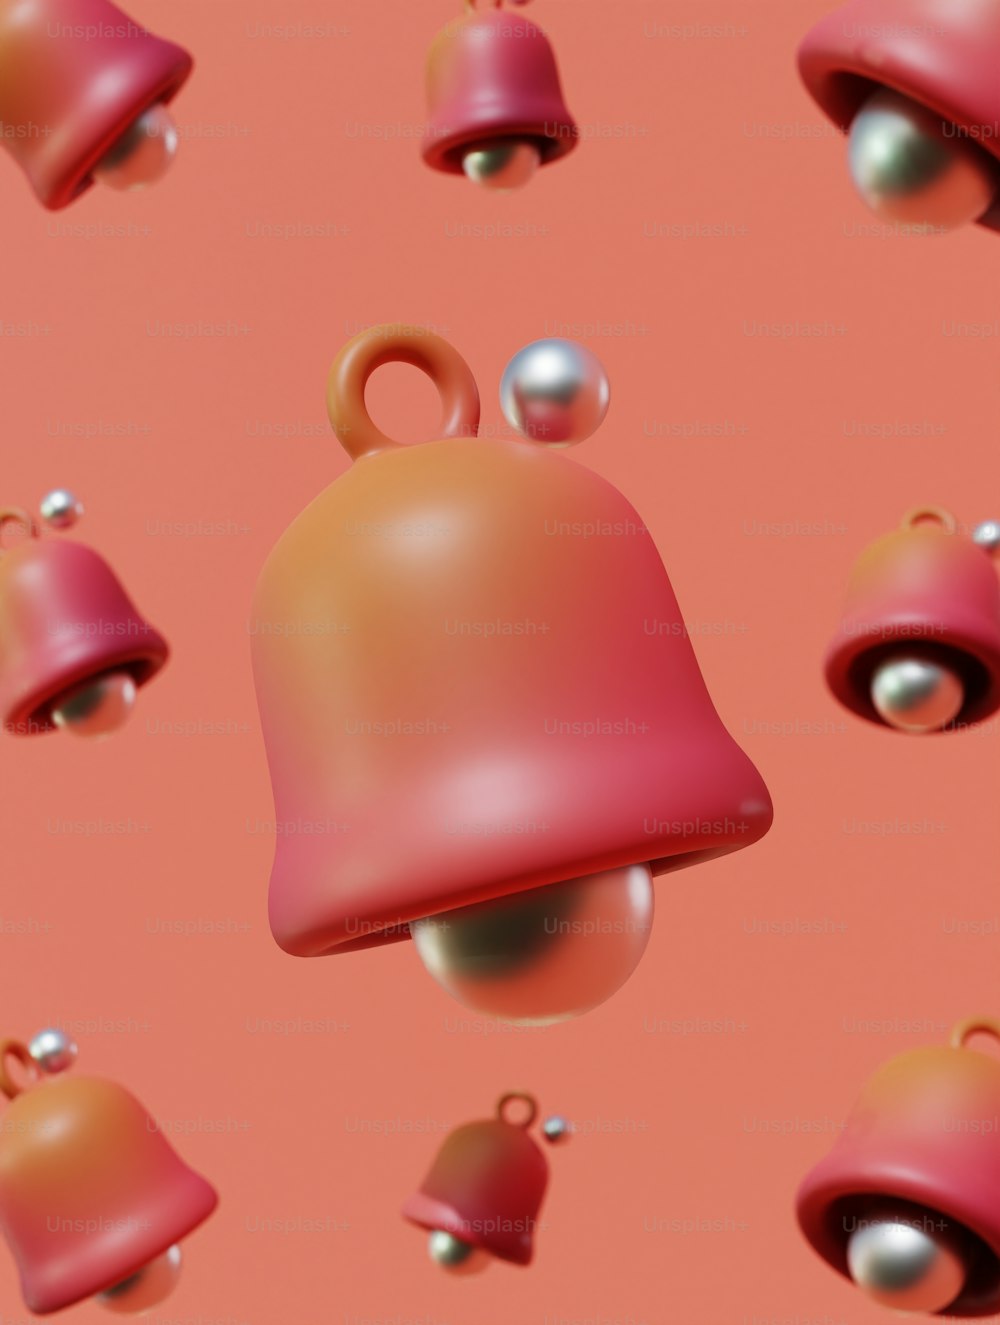 ein Haufen Glocken, die sich auf einer rosa Oberfläche befinden